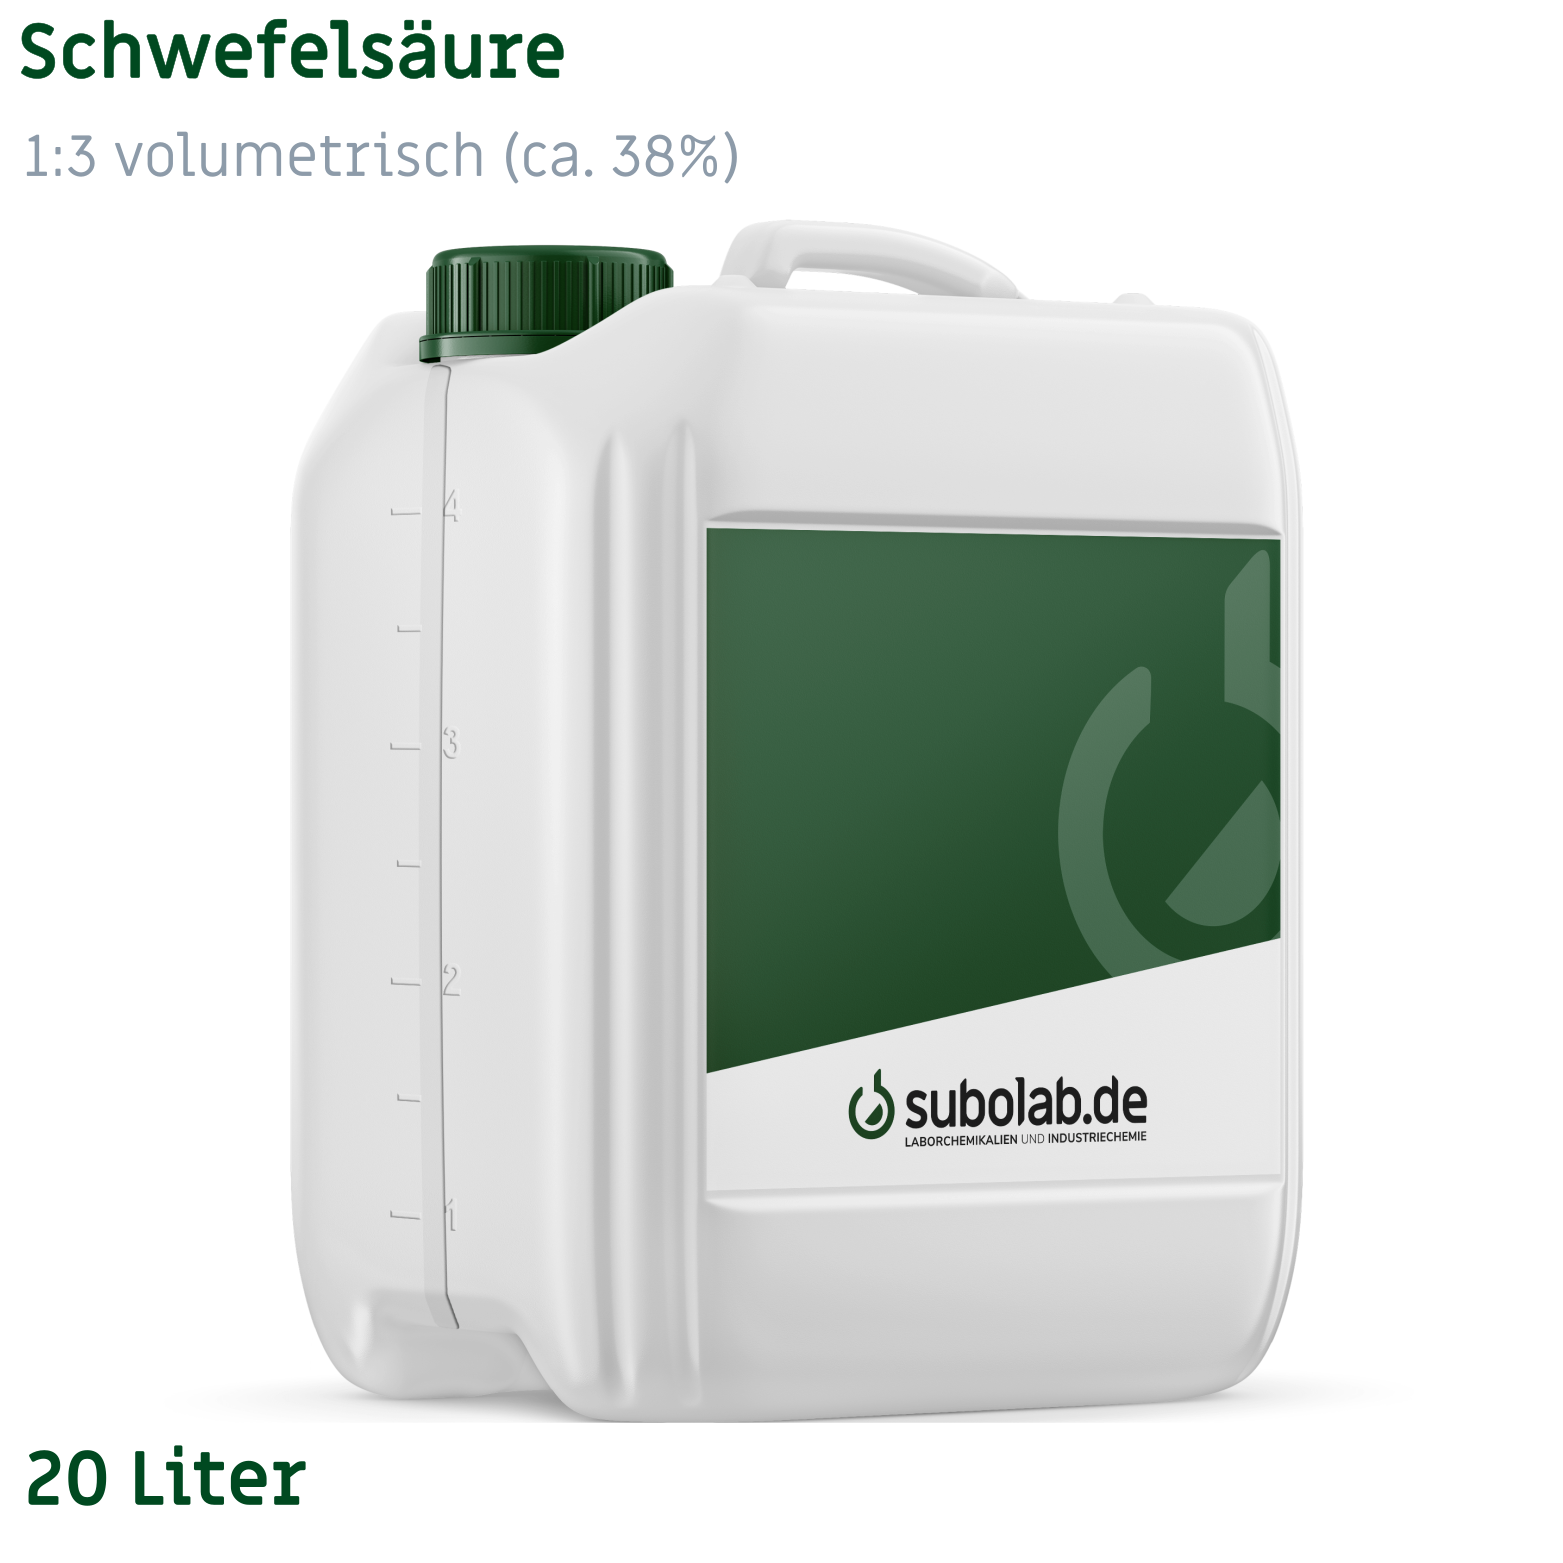 Bild von Schwefelsäure 1:3 volumetrisch (ca. 38%) (20 Liter)